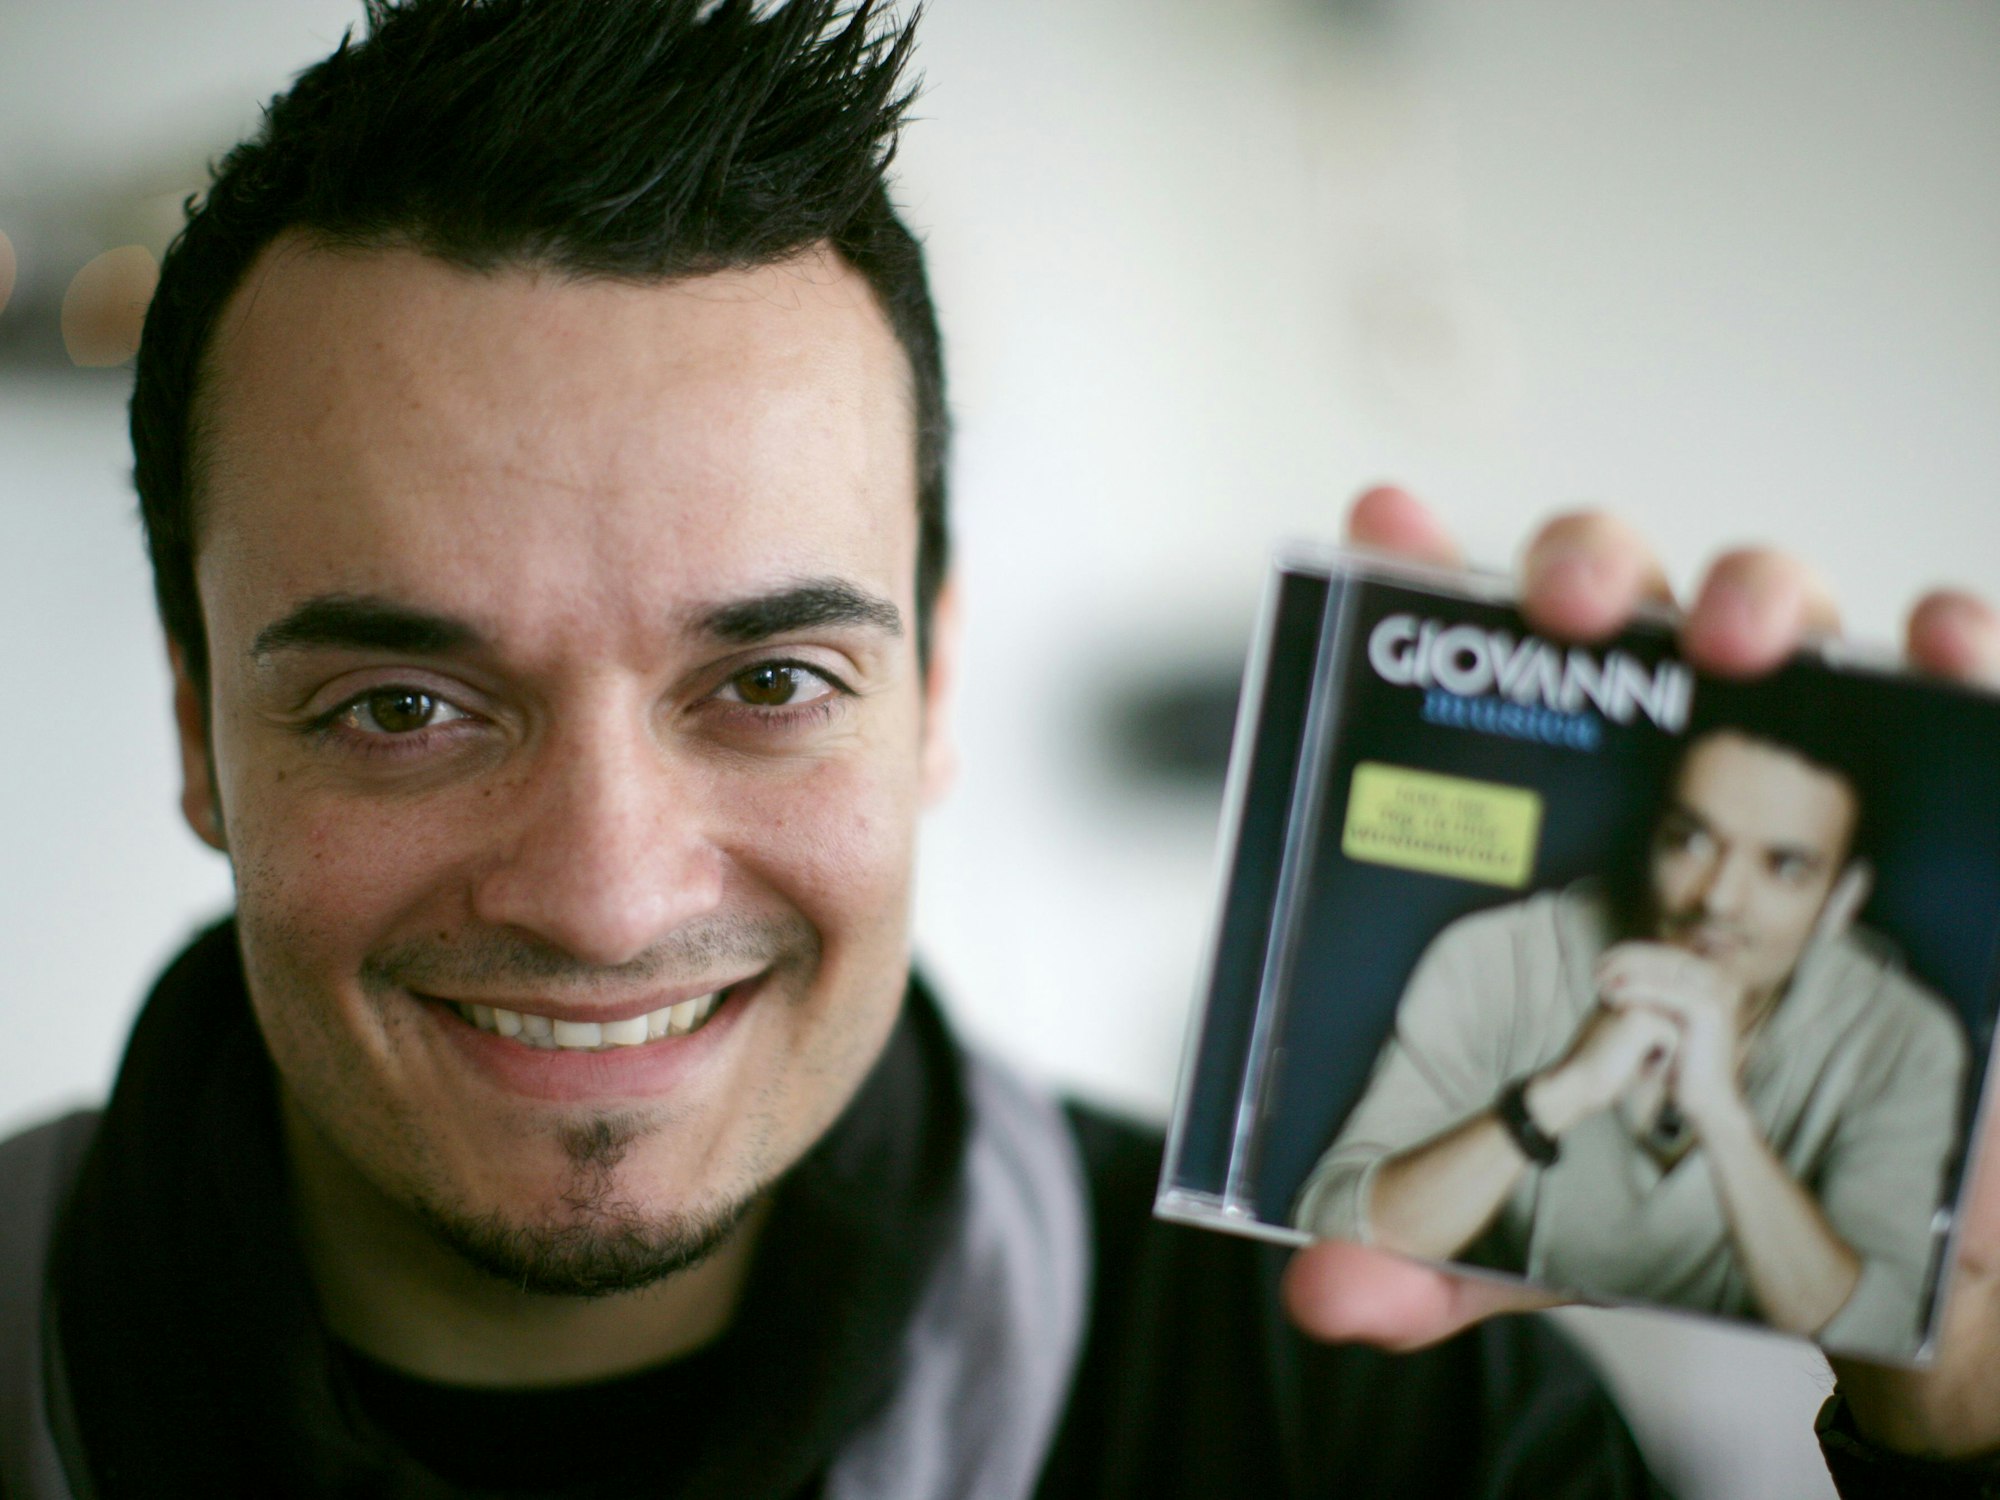 Der Sänger Giovanni Zarrella posiert am Mittwoch (26.11.2008) in einer Pizzeria in Dortmund. Der 30-Jährige, der vor kurzem zum ersten Mal Vater geworden ist, stellte hier sein neues Album "Musica" vor.